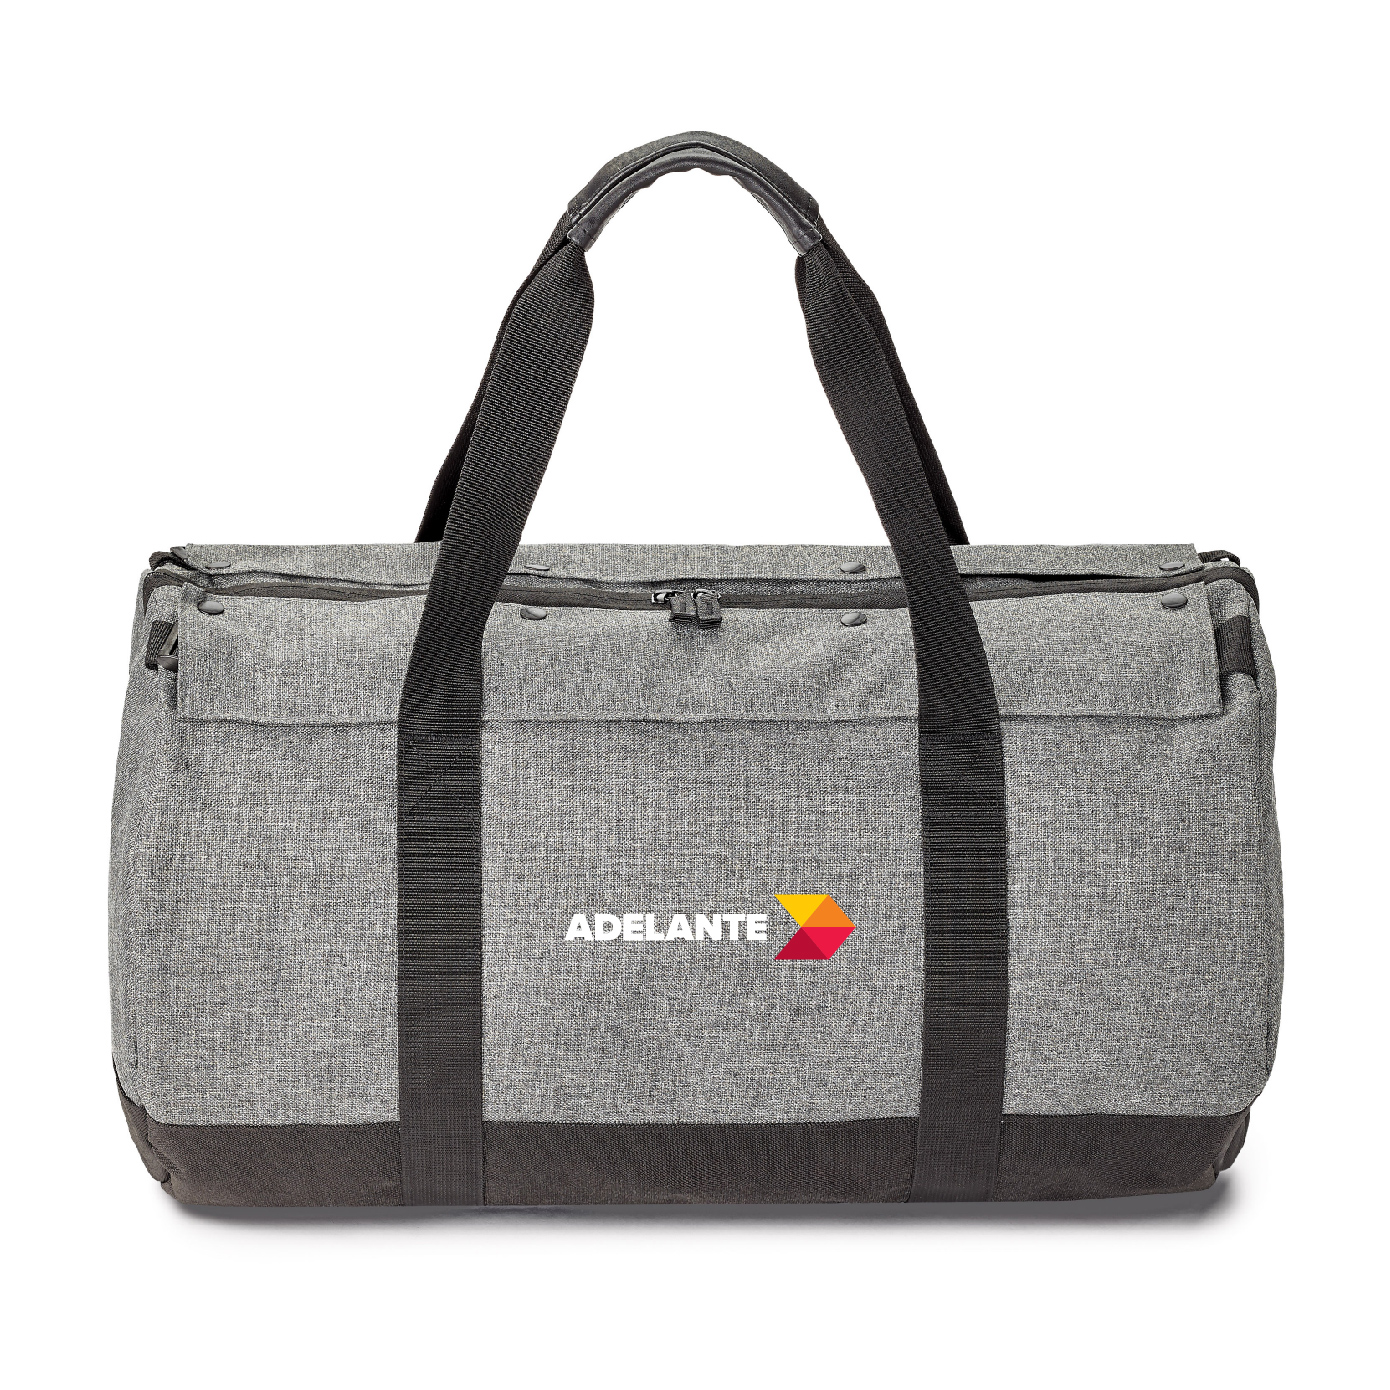 Adelante Weekender Duffle-Backpack